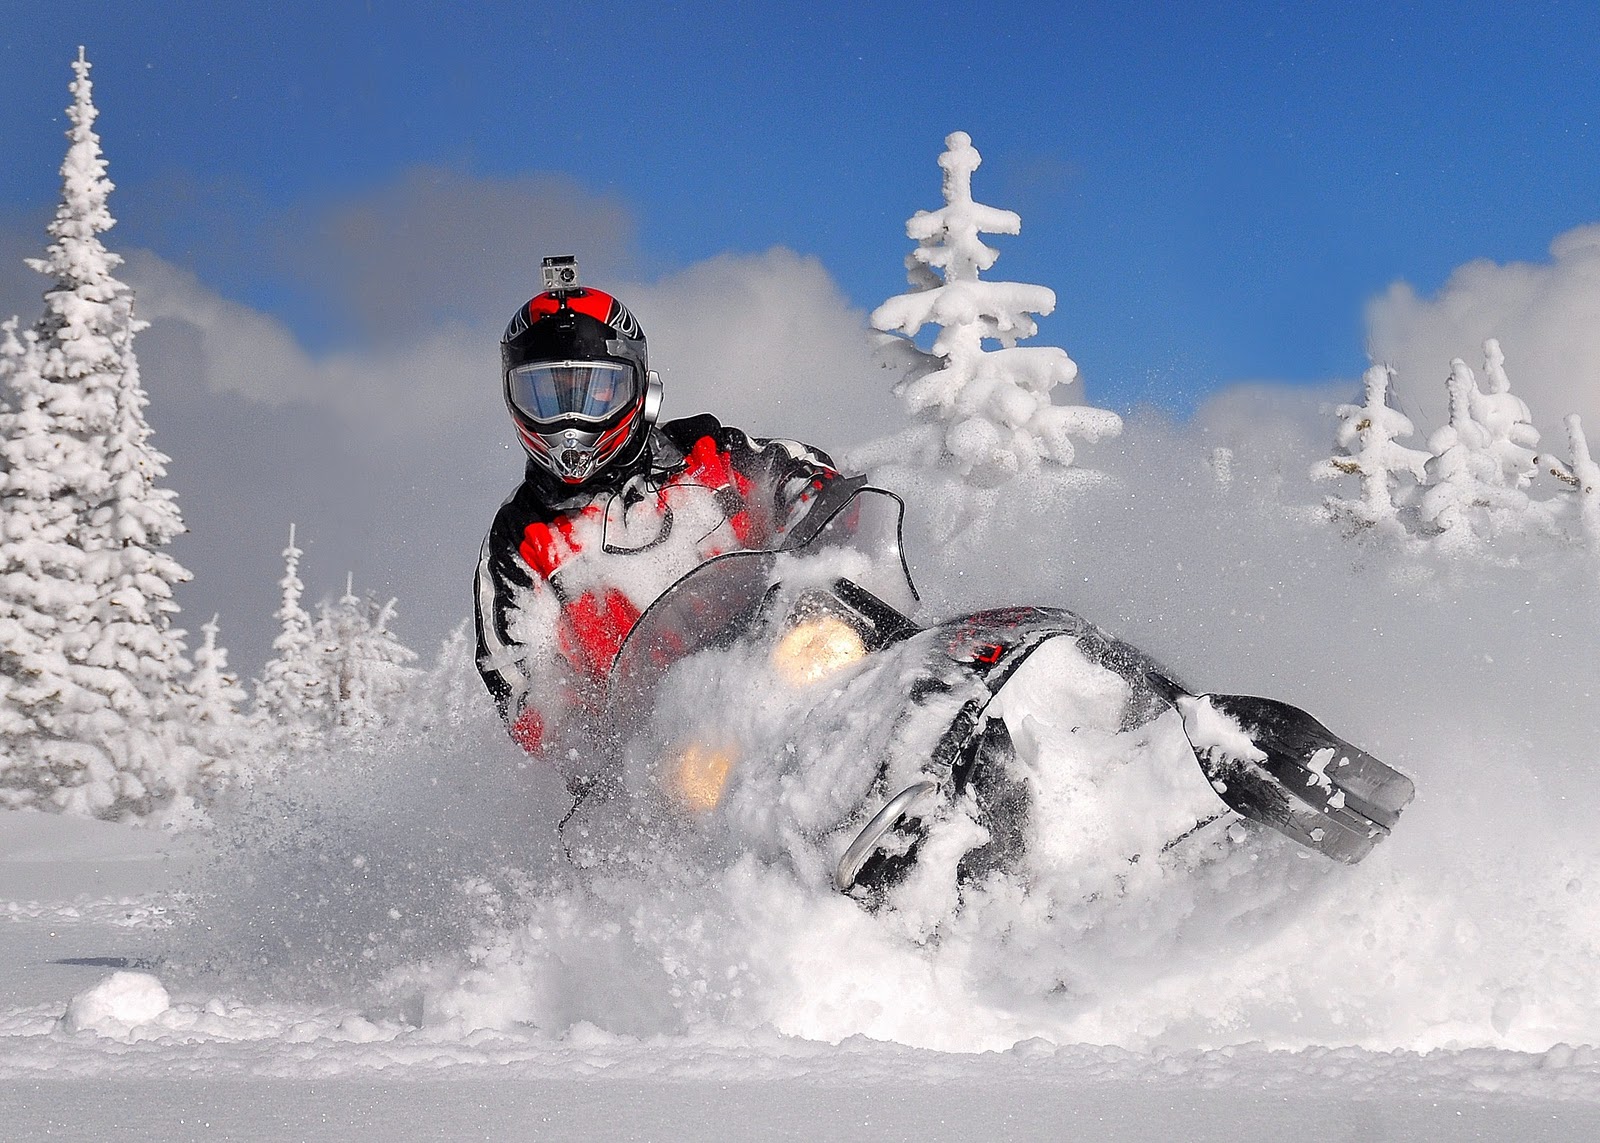 papel pintado de motos de nieve,motonieve,nieve,invierno,vehículo,deporte extremo